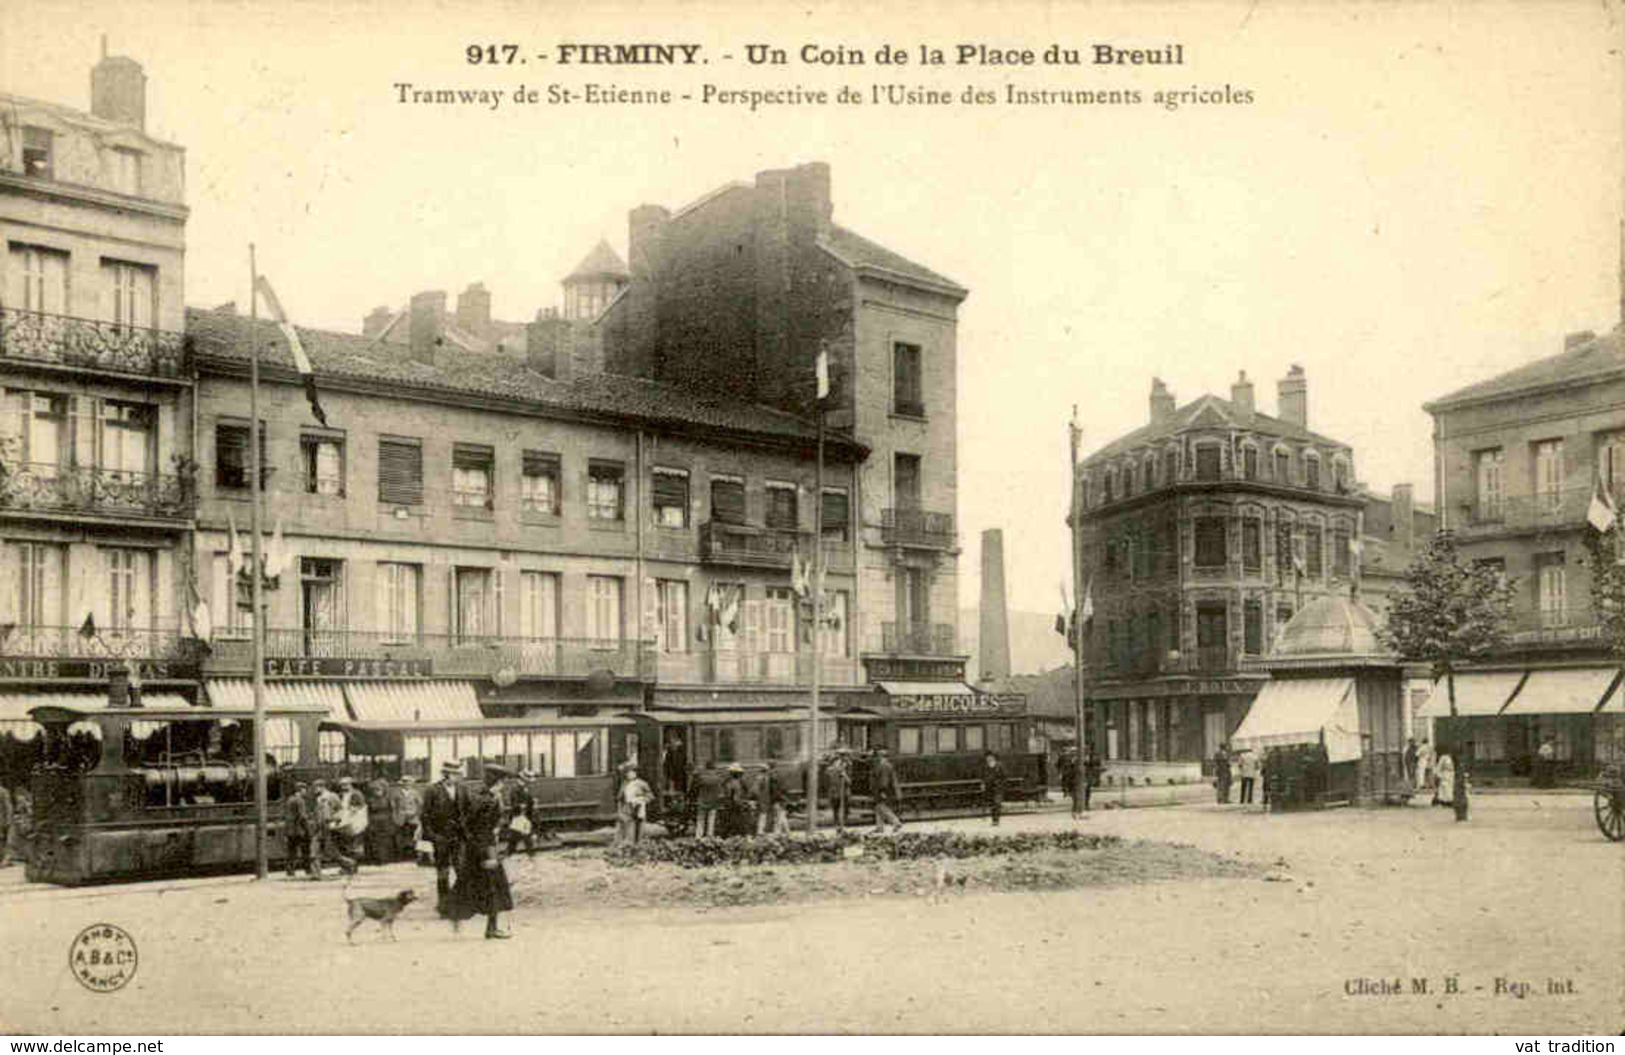 FRANCE - Carte Postale - Firminy - Tramway De St Etienne Et Perspective De L'Usine D'Instruments Agricoles - L 66912 - Firminy